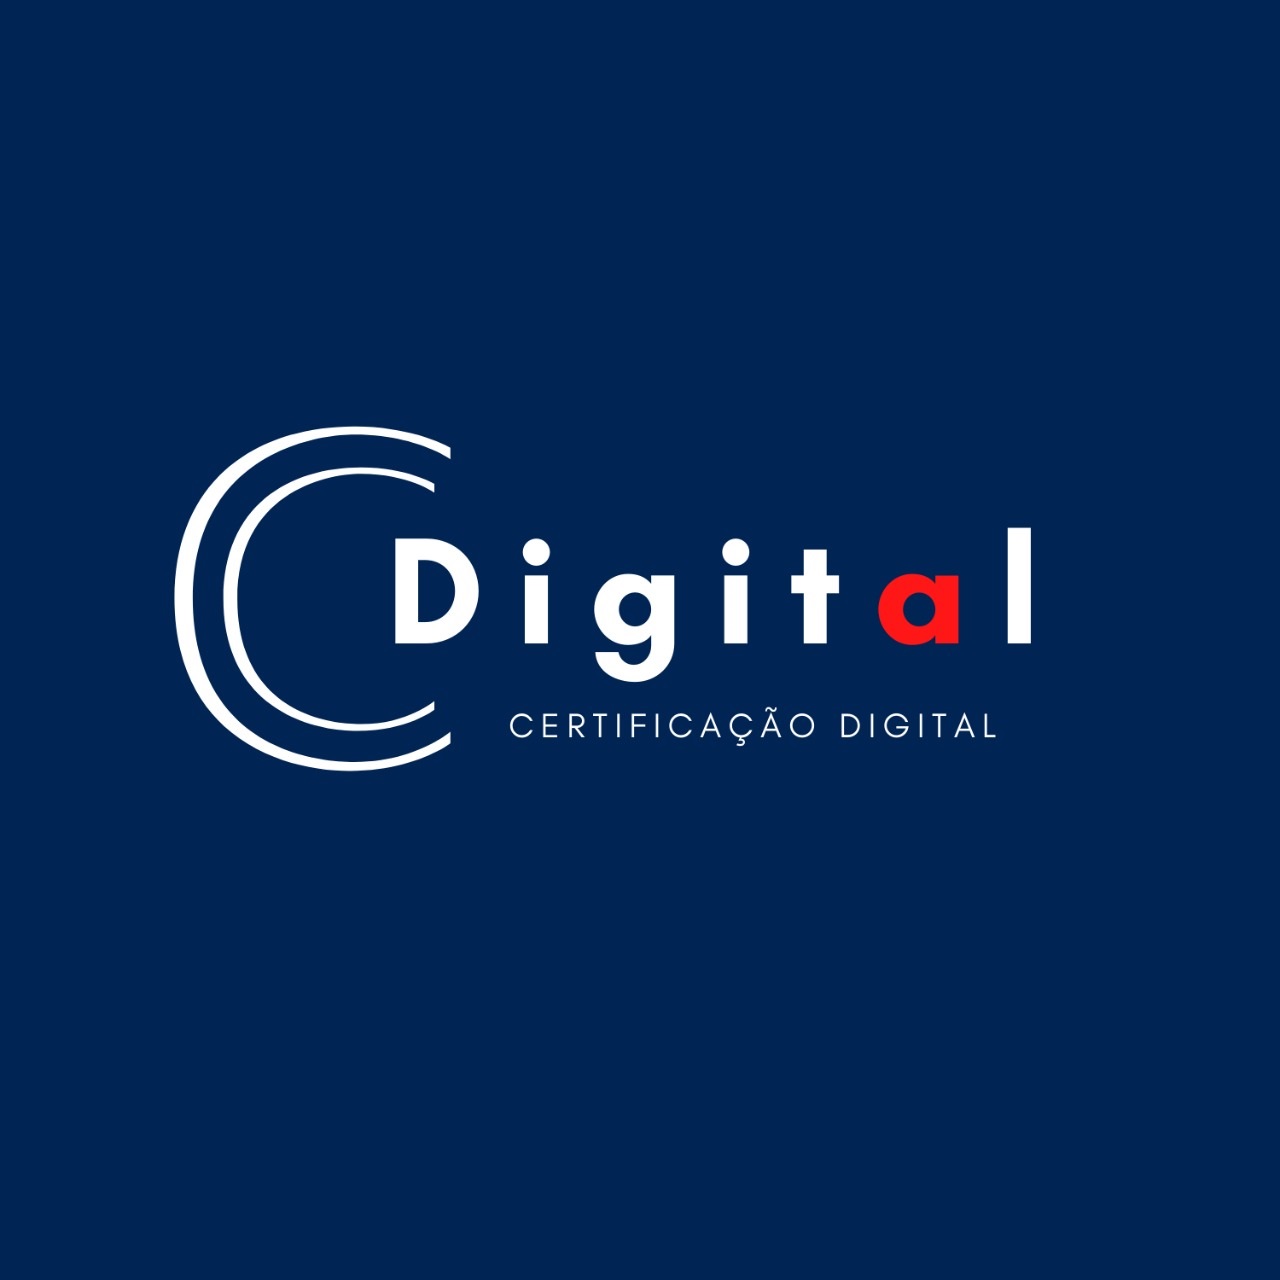 Logotipo do parceiro AR Cdigital &#8211; LGX Contabilidade &#8211; 25%